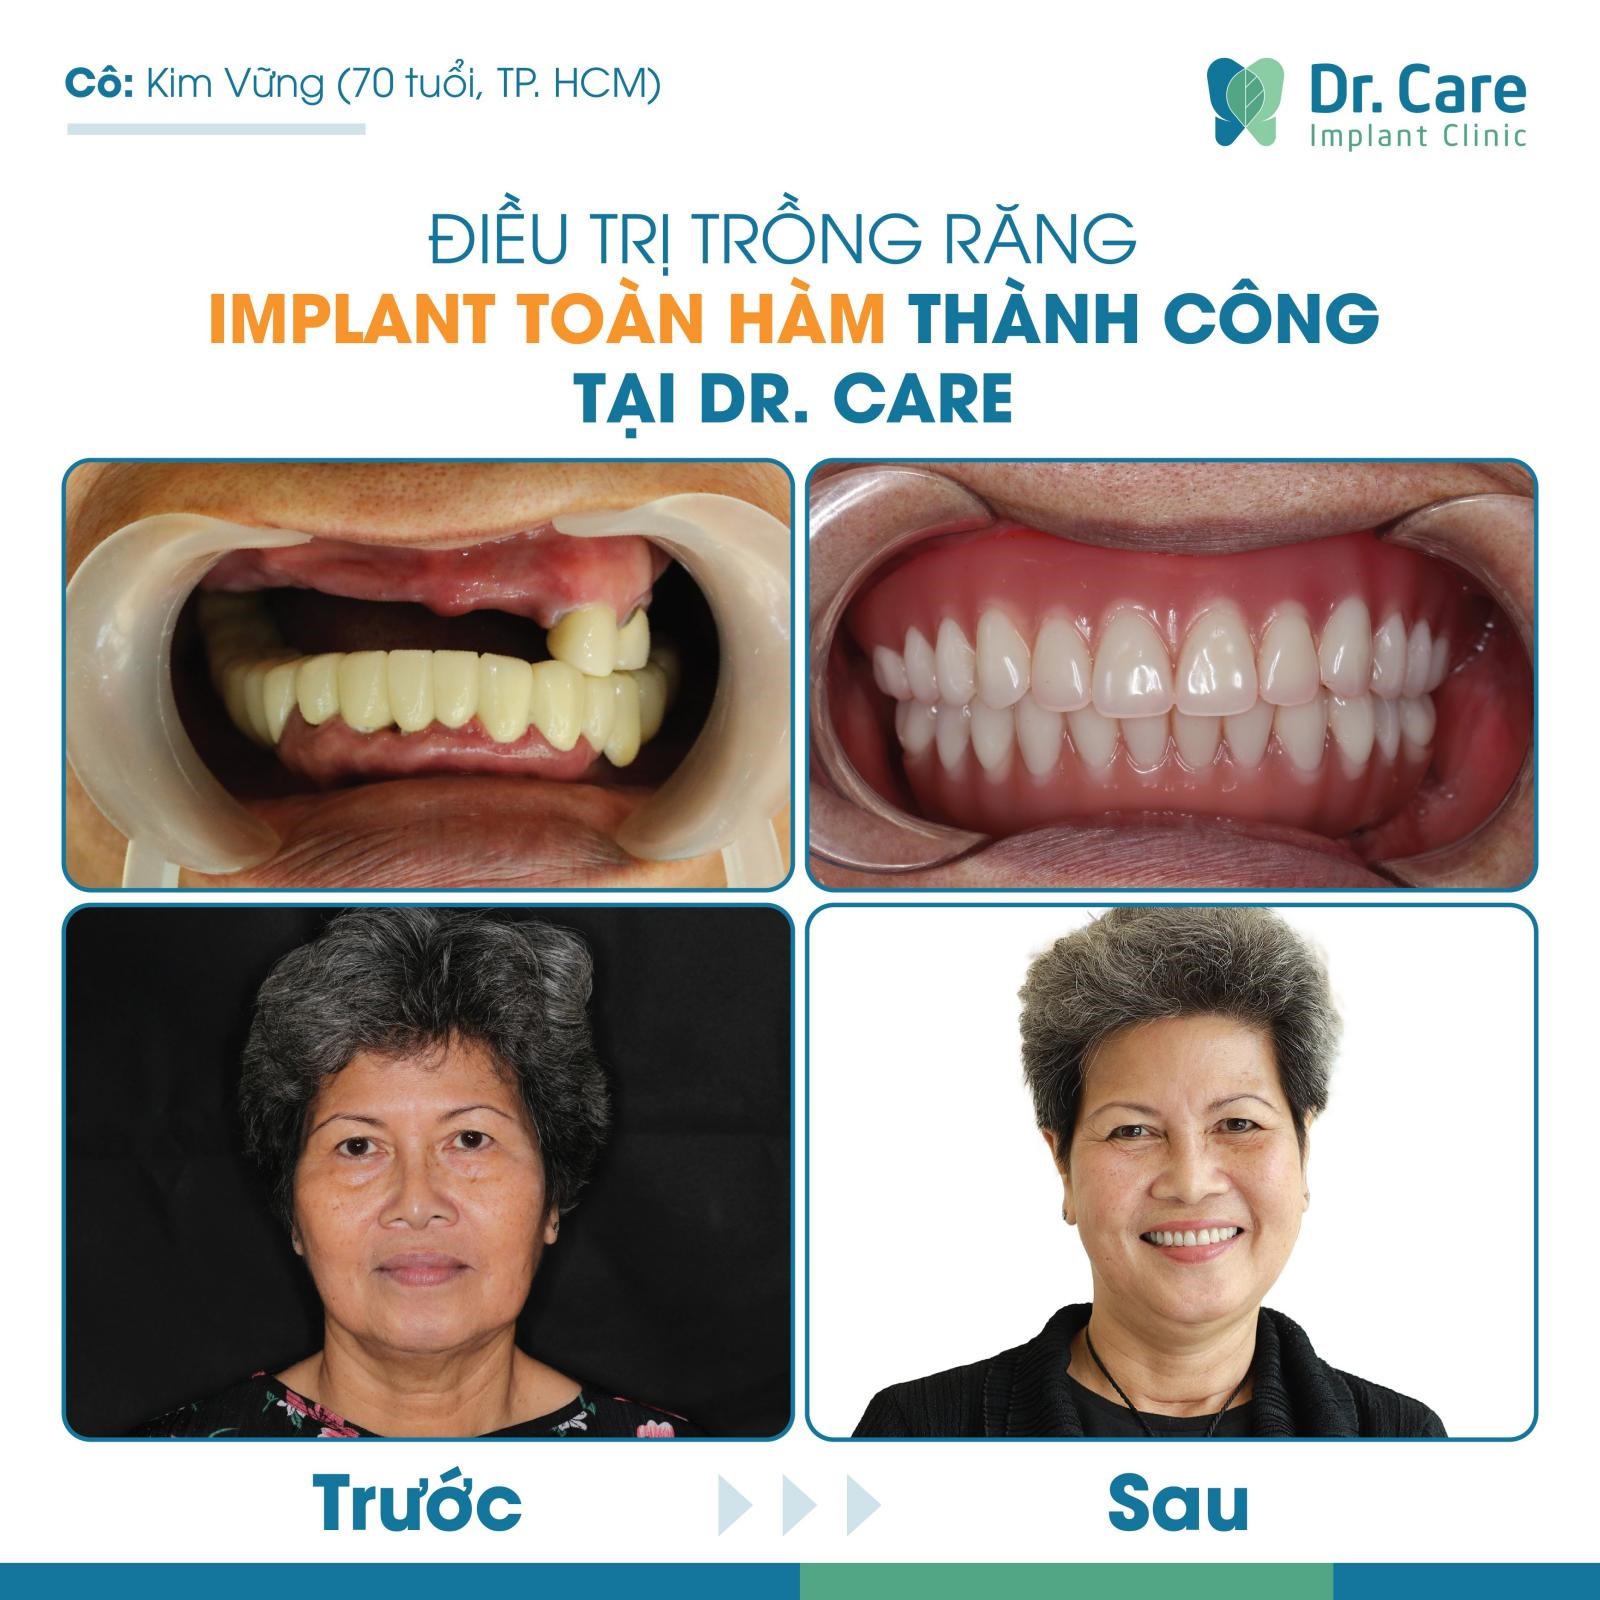 Cô Kim Vững mất 9 răng đã chọn phương pháp All on - 4 để điều trị